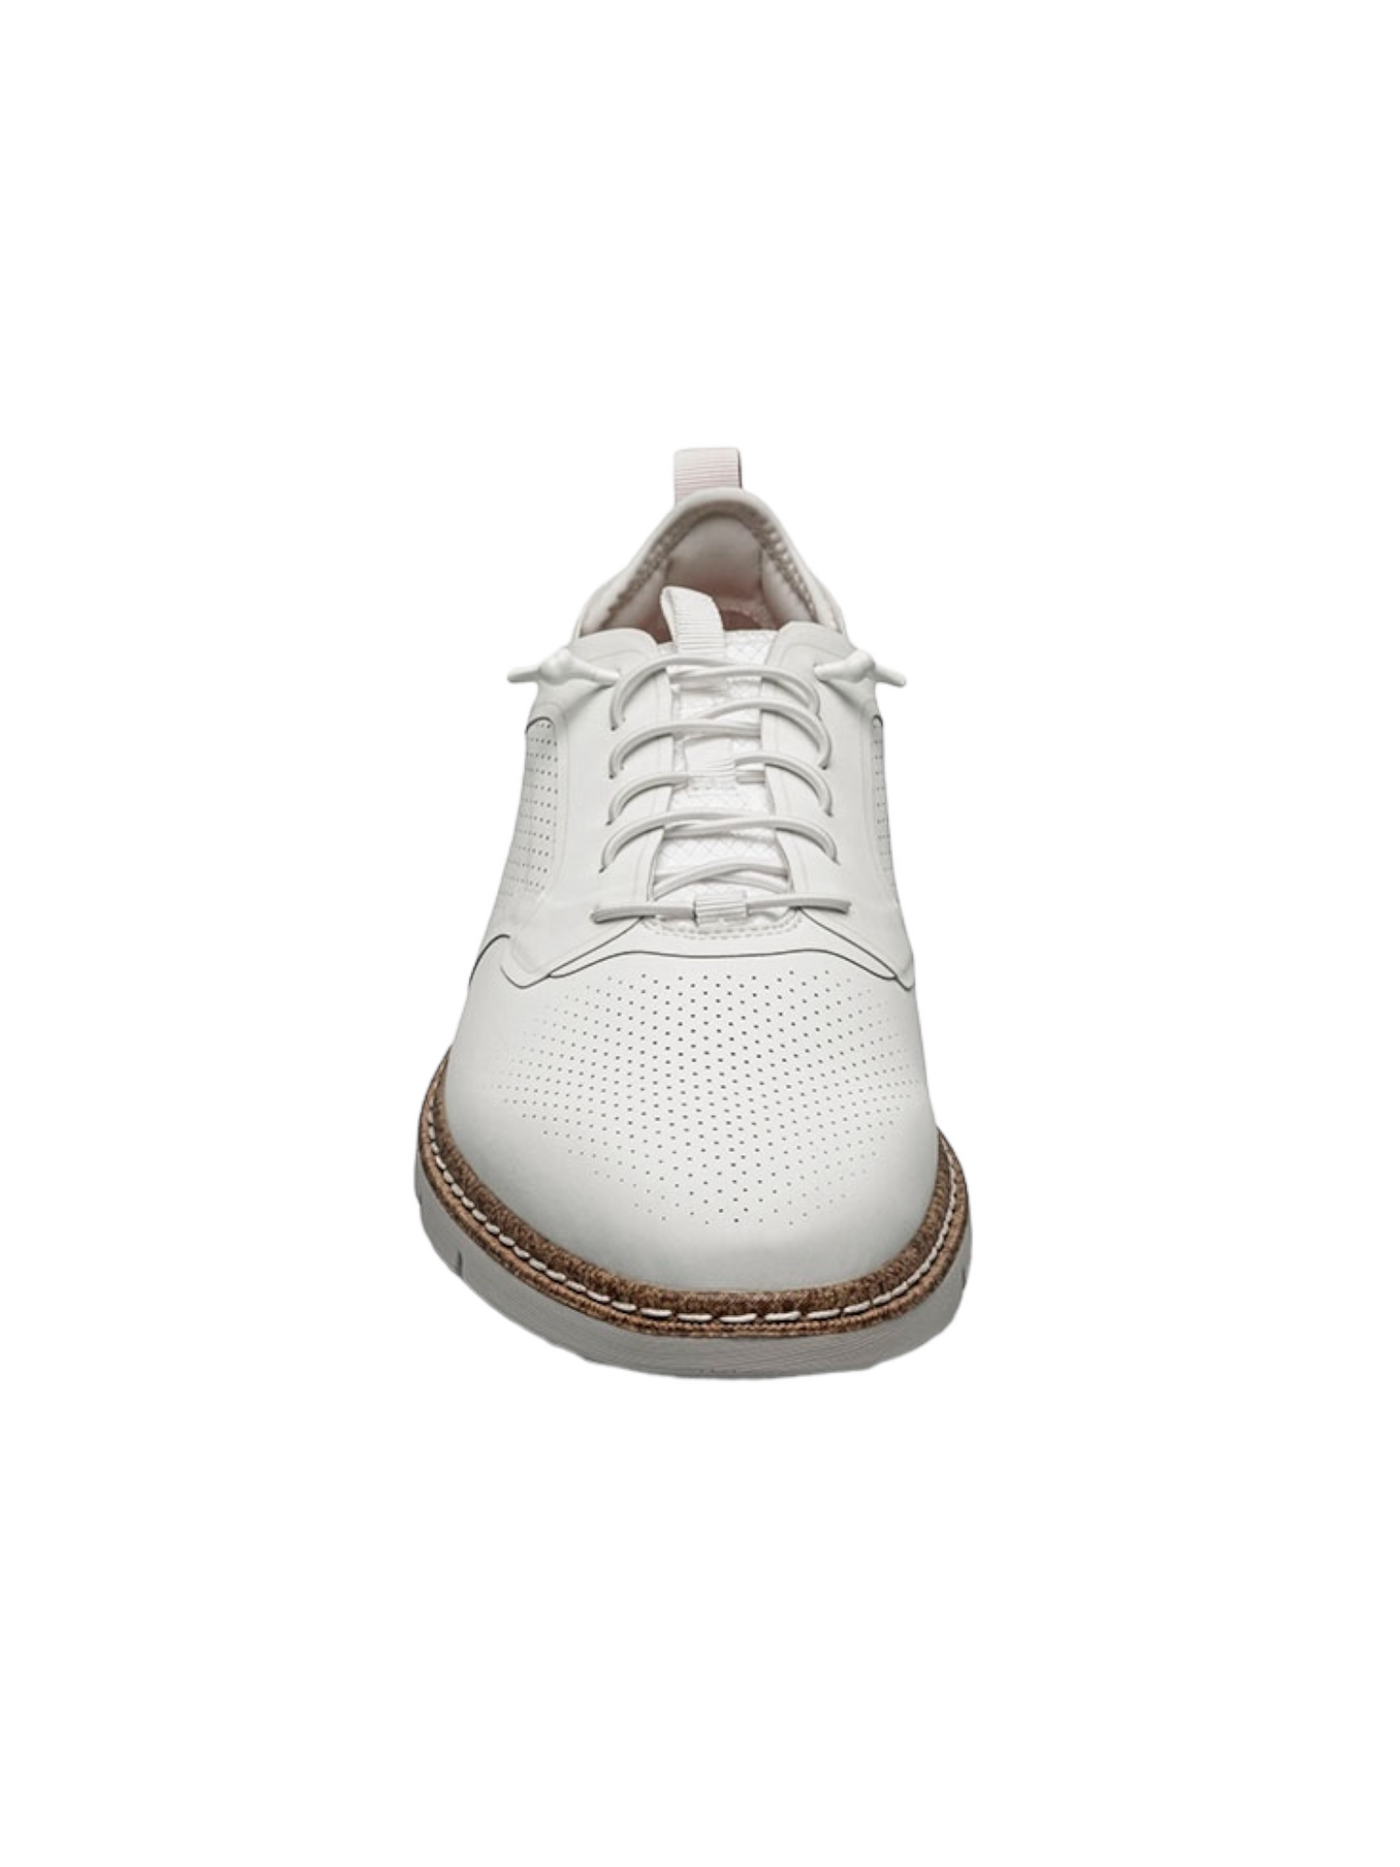 Chaussures blanches à lacets élastiques Synchro